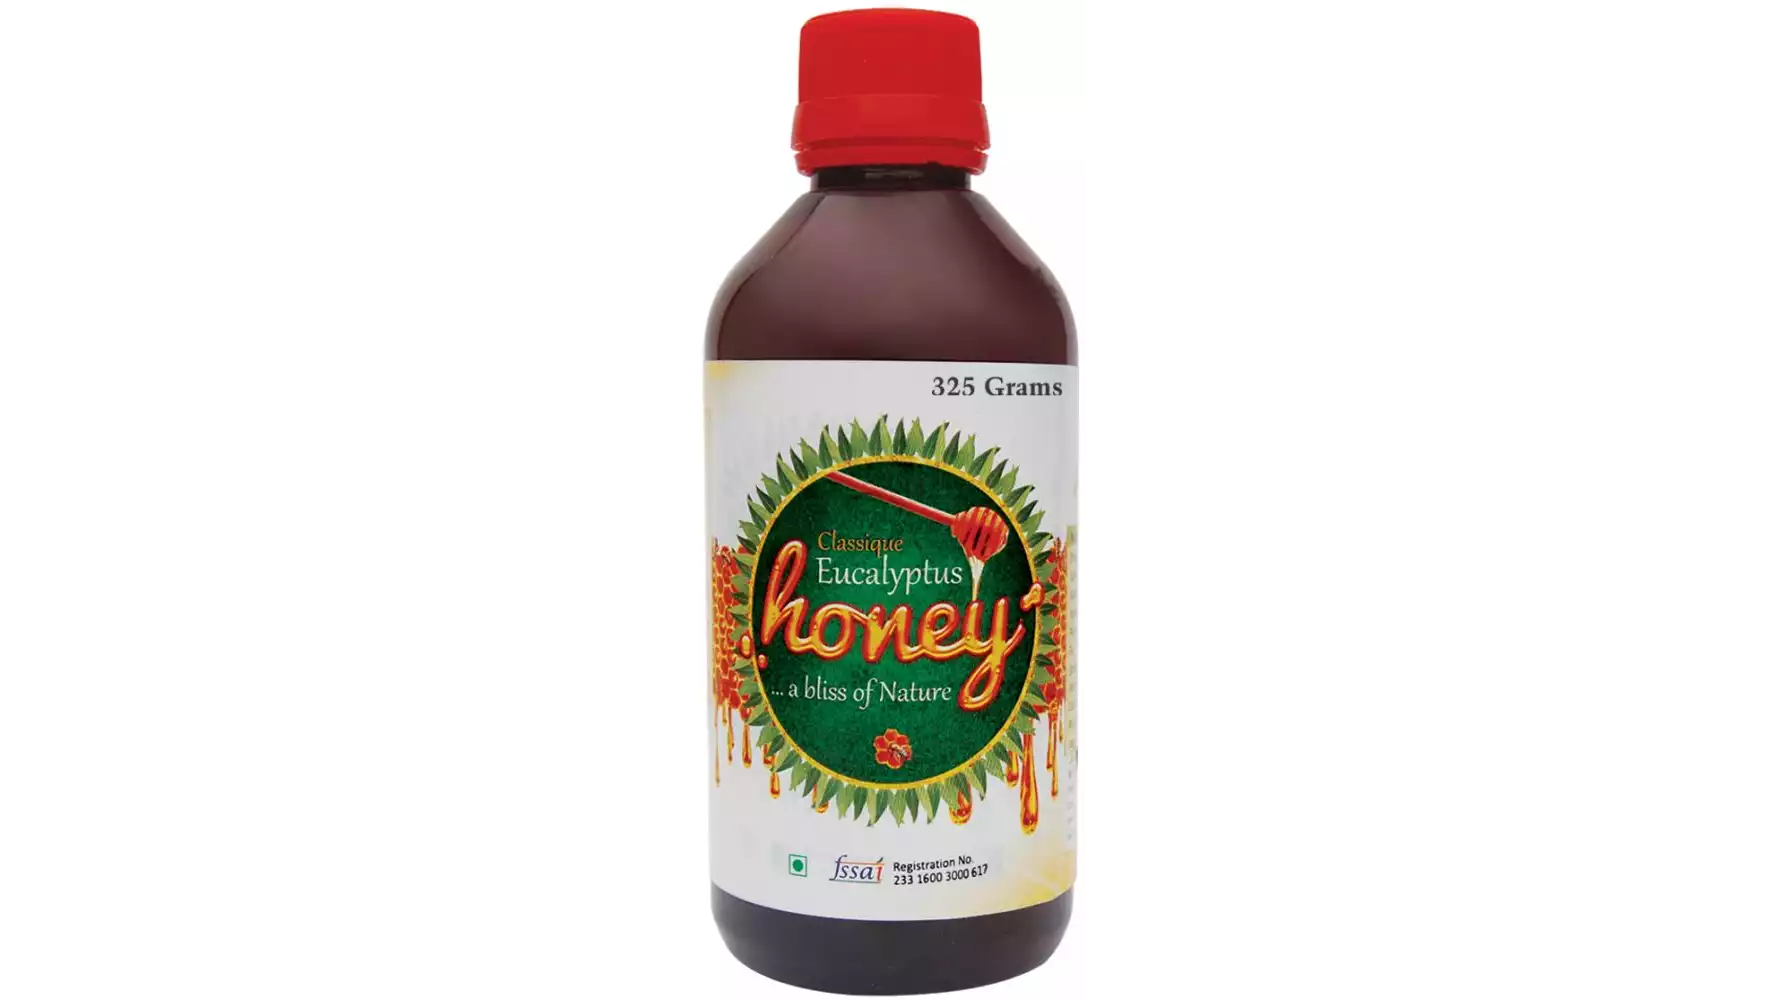 SKSB Natural Honey Eucalpytus (325g)